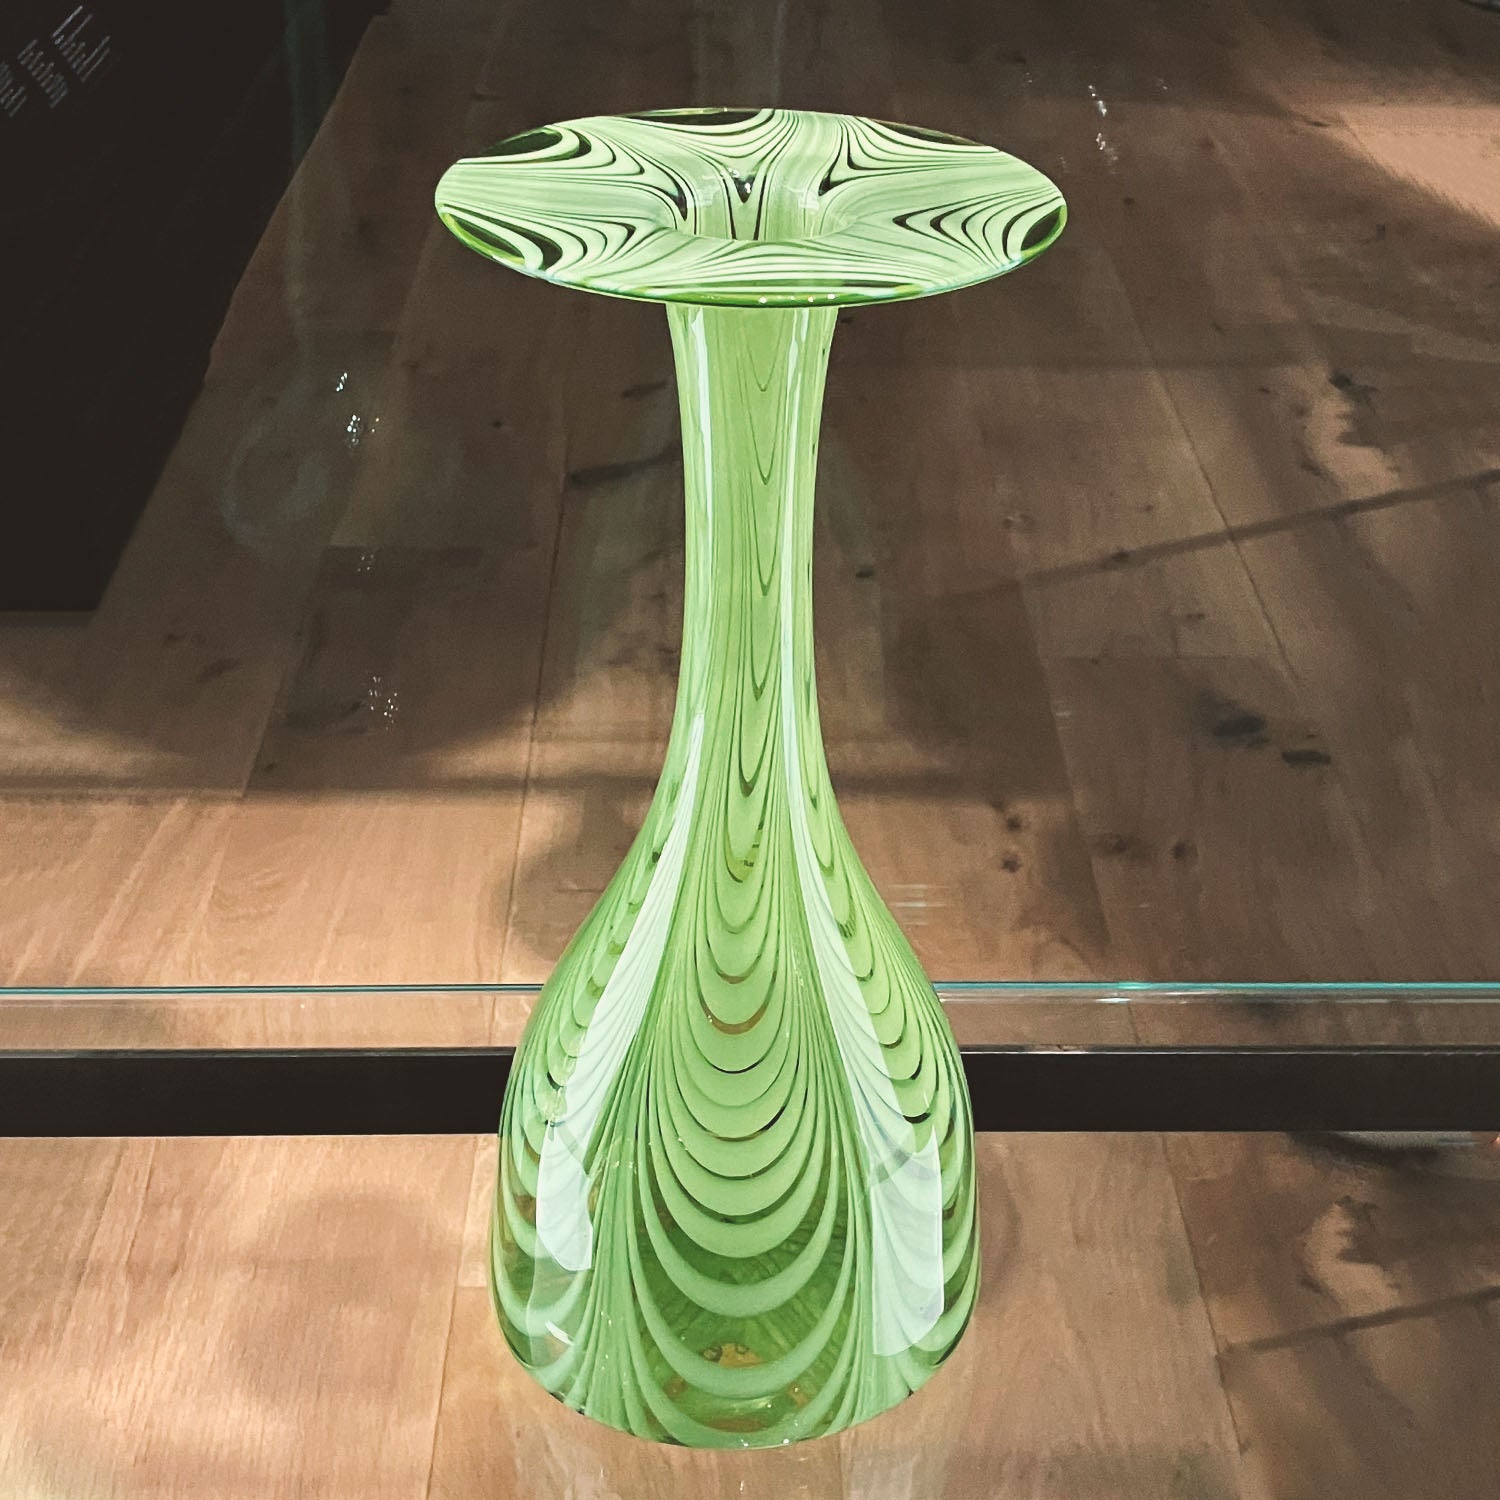 ic: Clutha Vase - British, 1888, Christopher Dresser